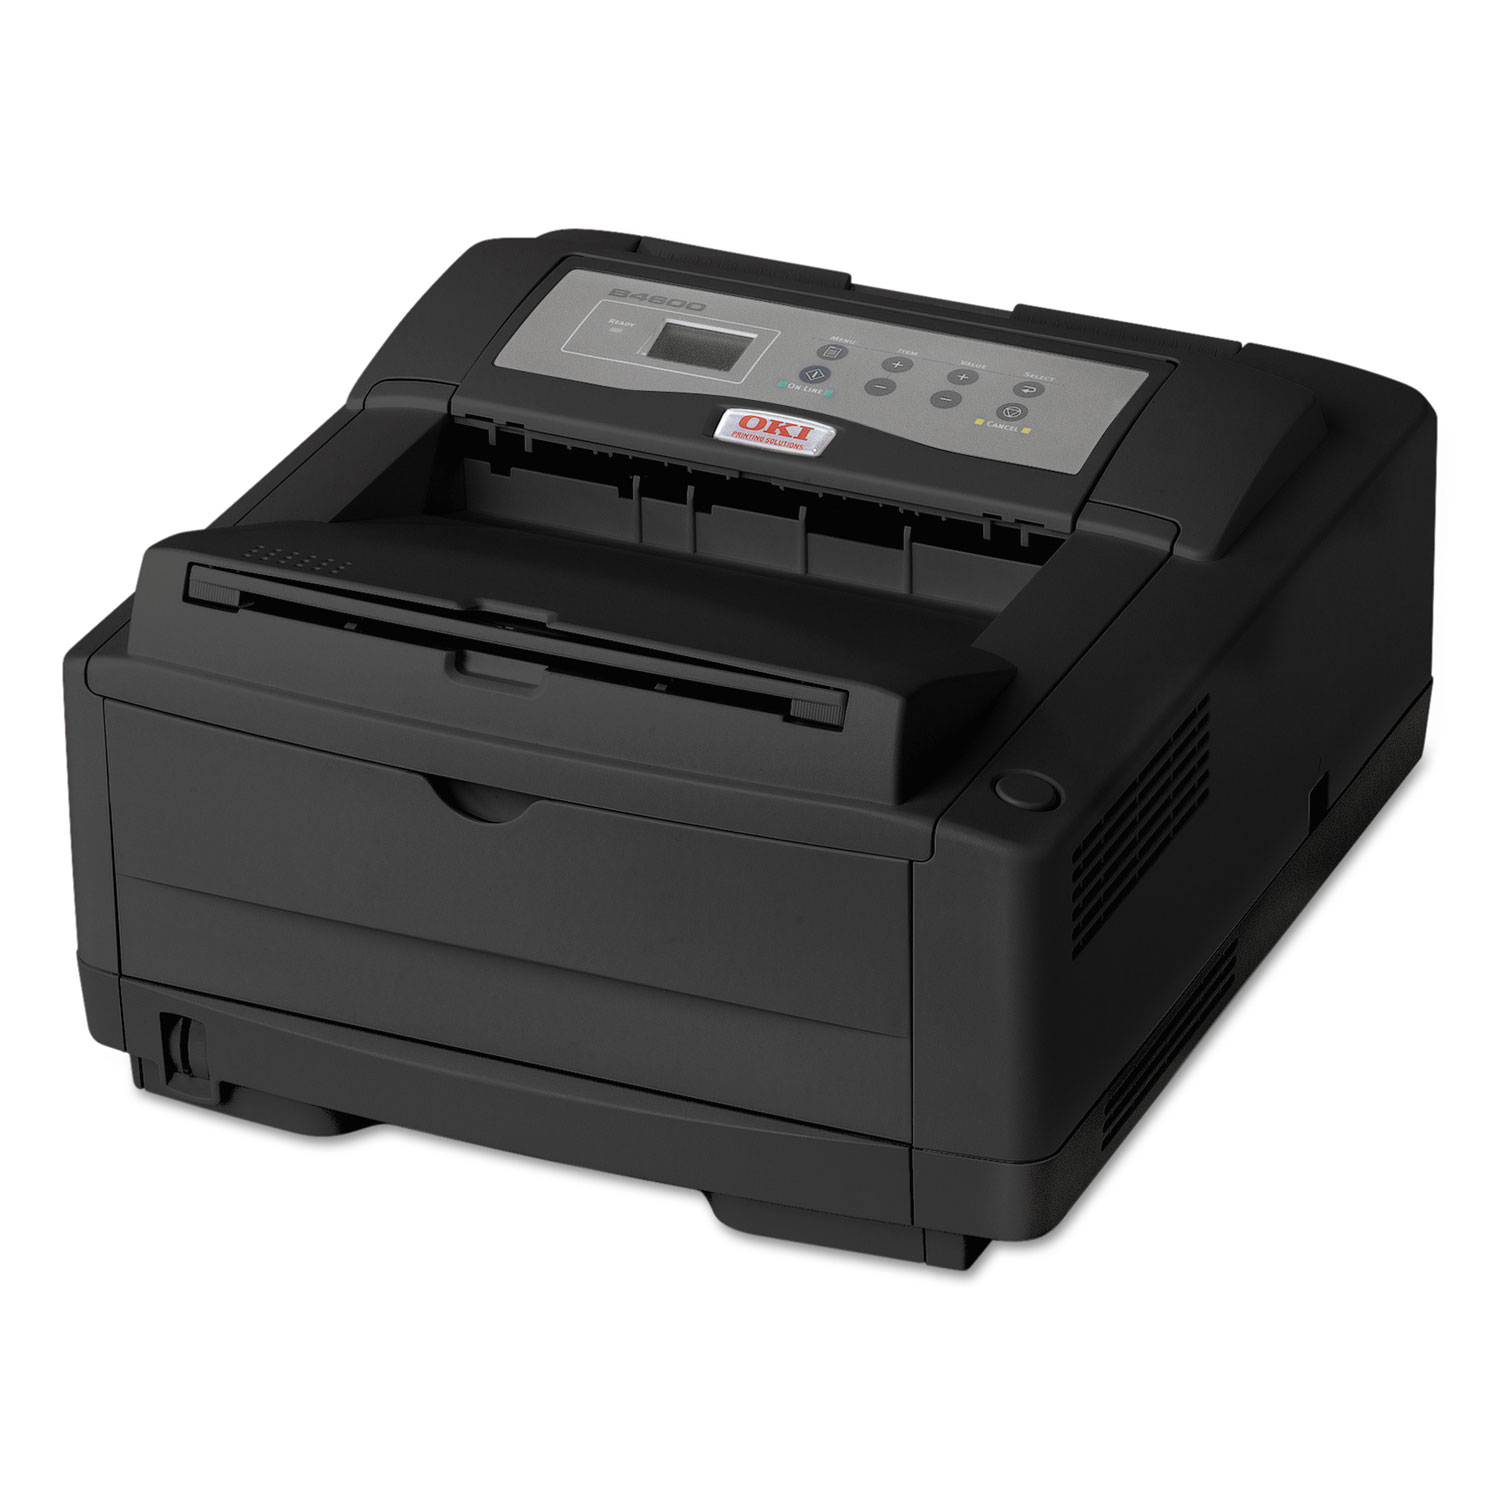 B4600n Series Digital Monochrome Printer, 120V, Black